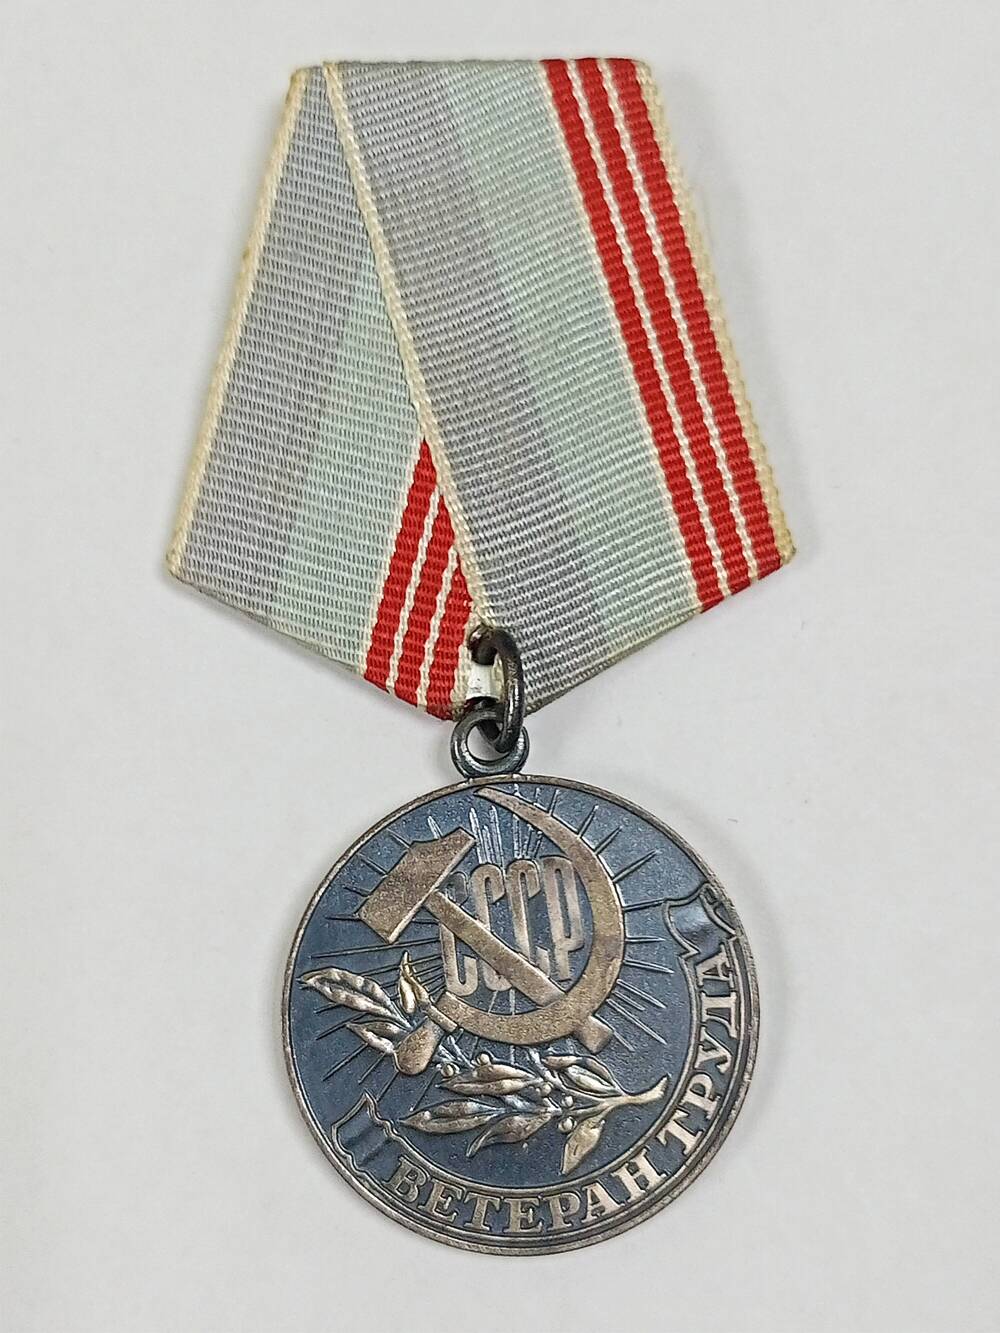 Медаль Ветеран труда Ямалетдинова Галимьяна Ялалетдиновича, выданная 2 октября 1980 г.